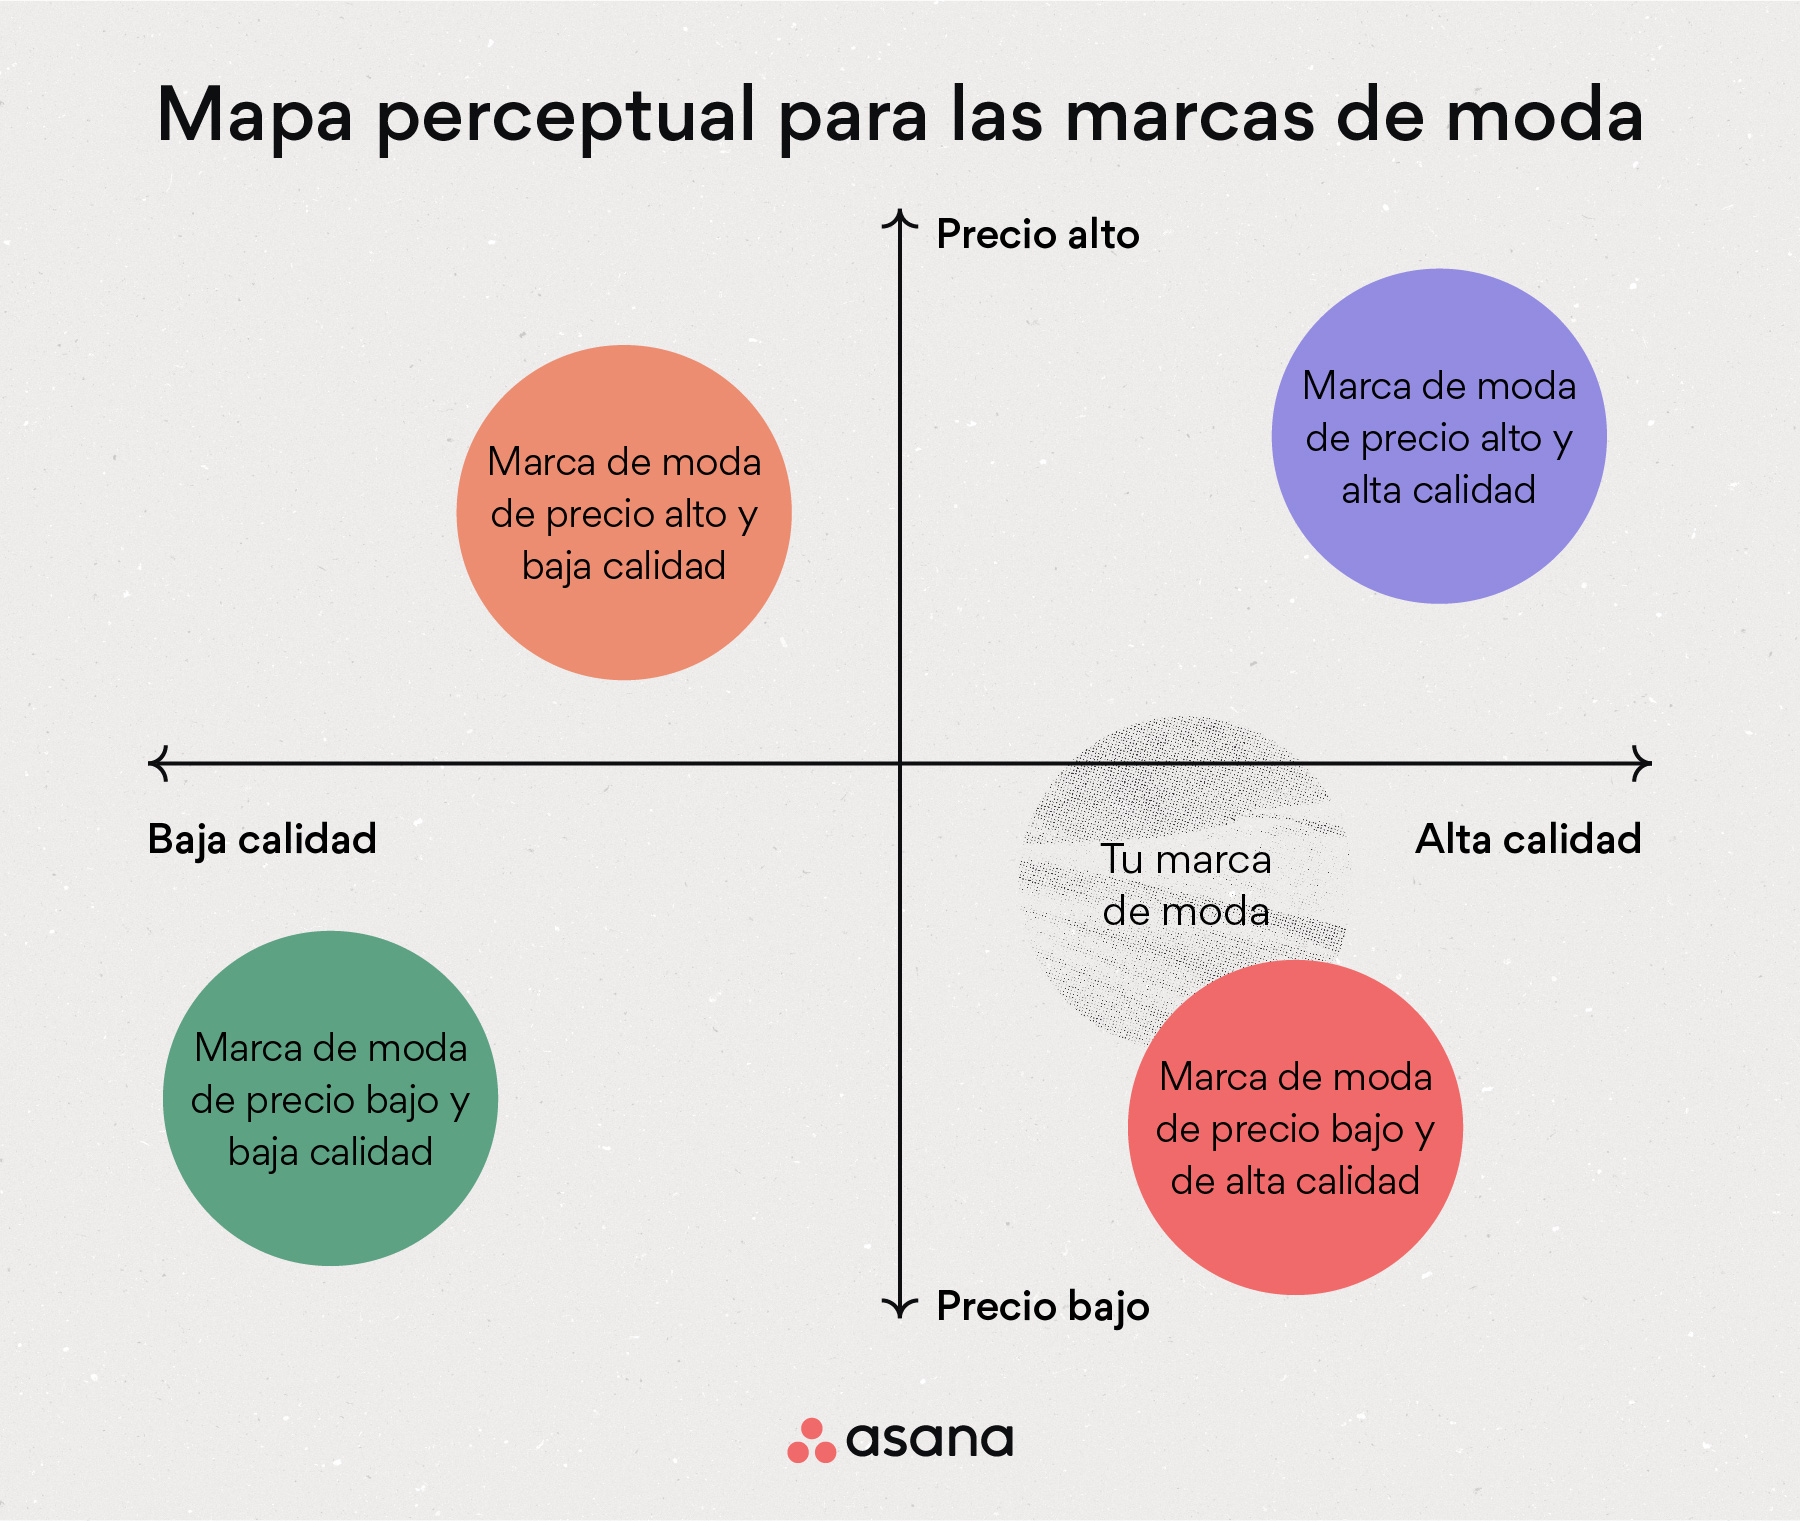 [Ilustración integrada] Mapa perceptual para las marcas de moda (ejemplo)